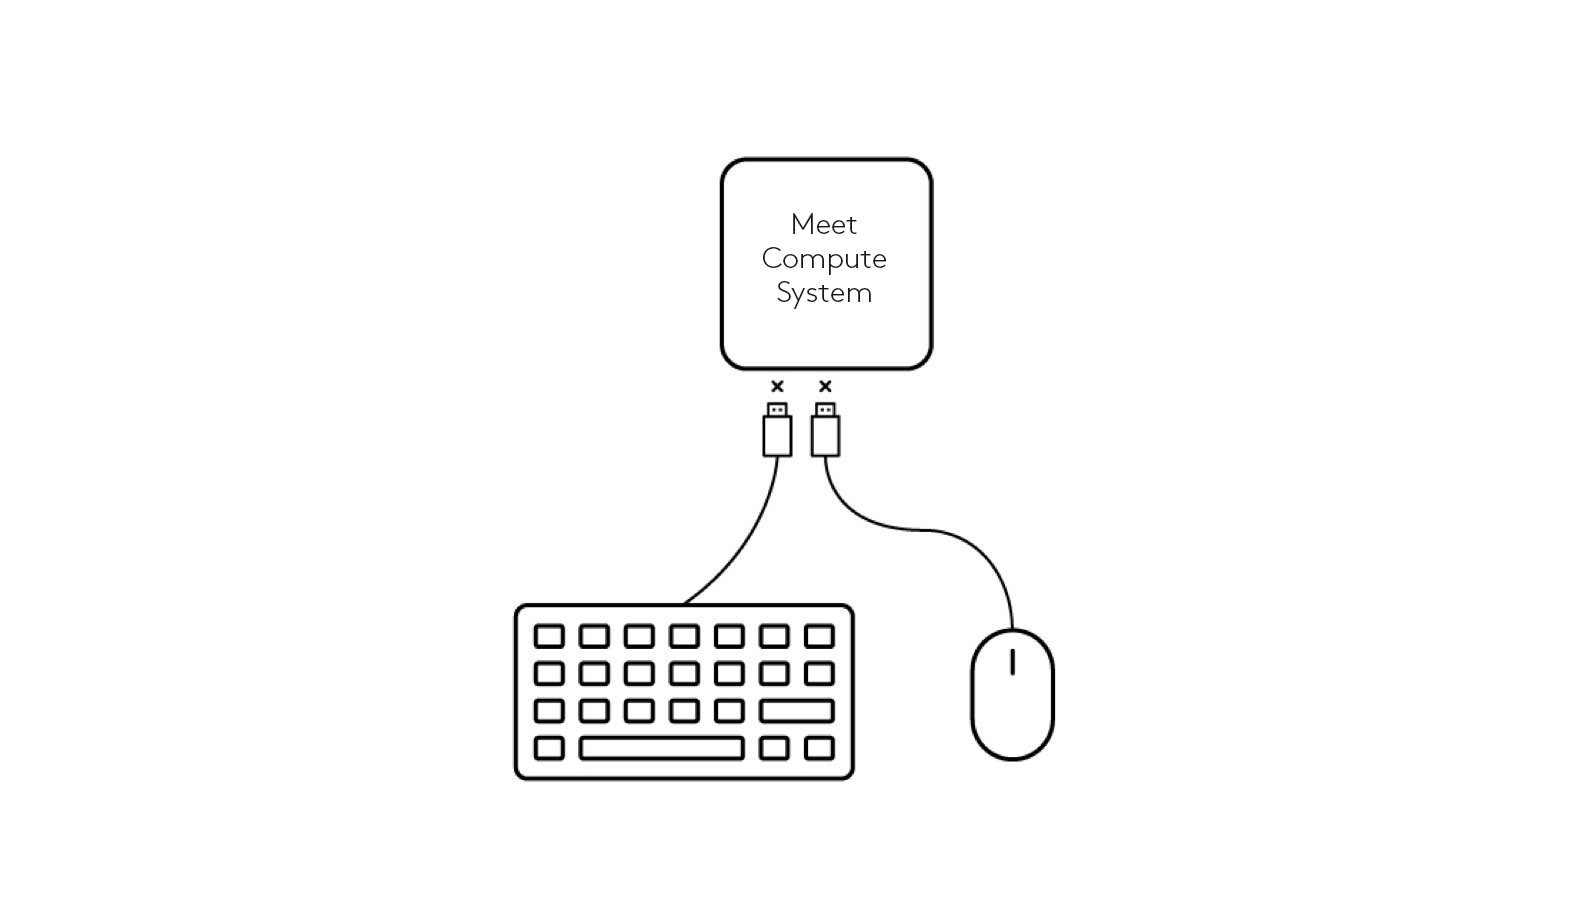 中斷鍵盤和滑鼠與會議運算系統連接的示意圖